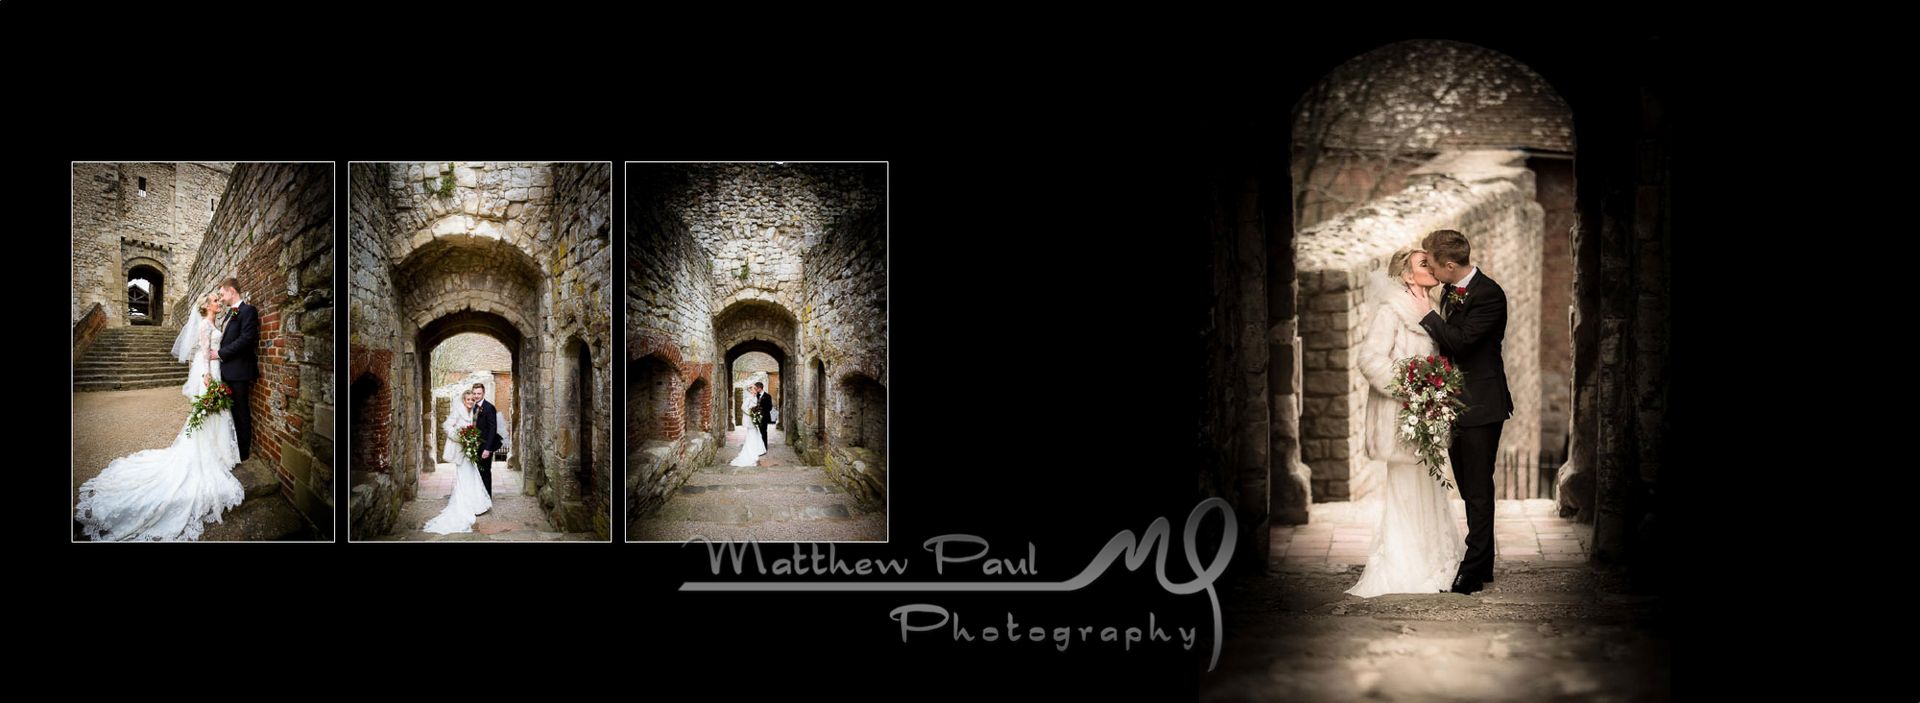 Farnham Castle, bride and groom in archway